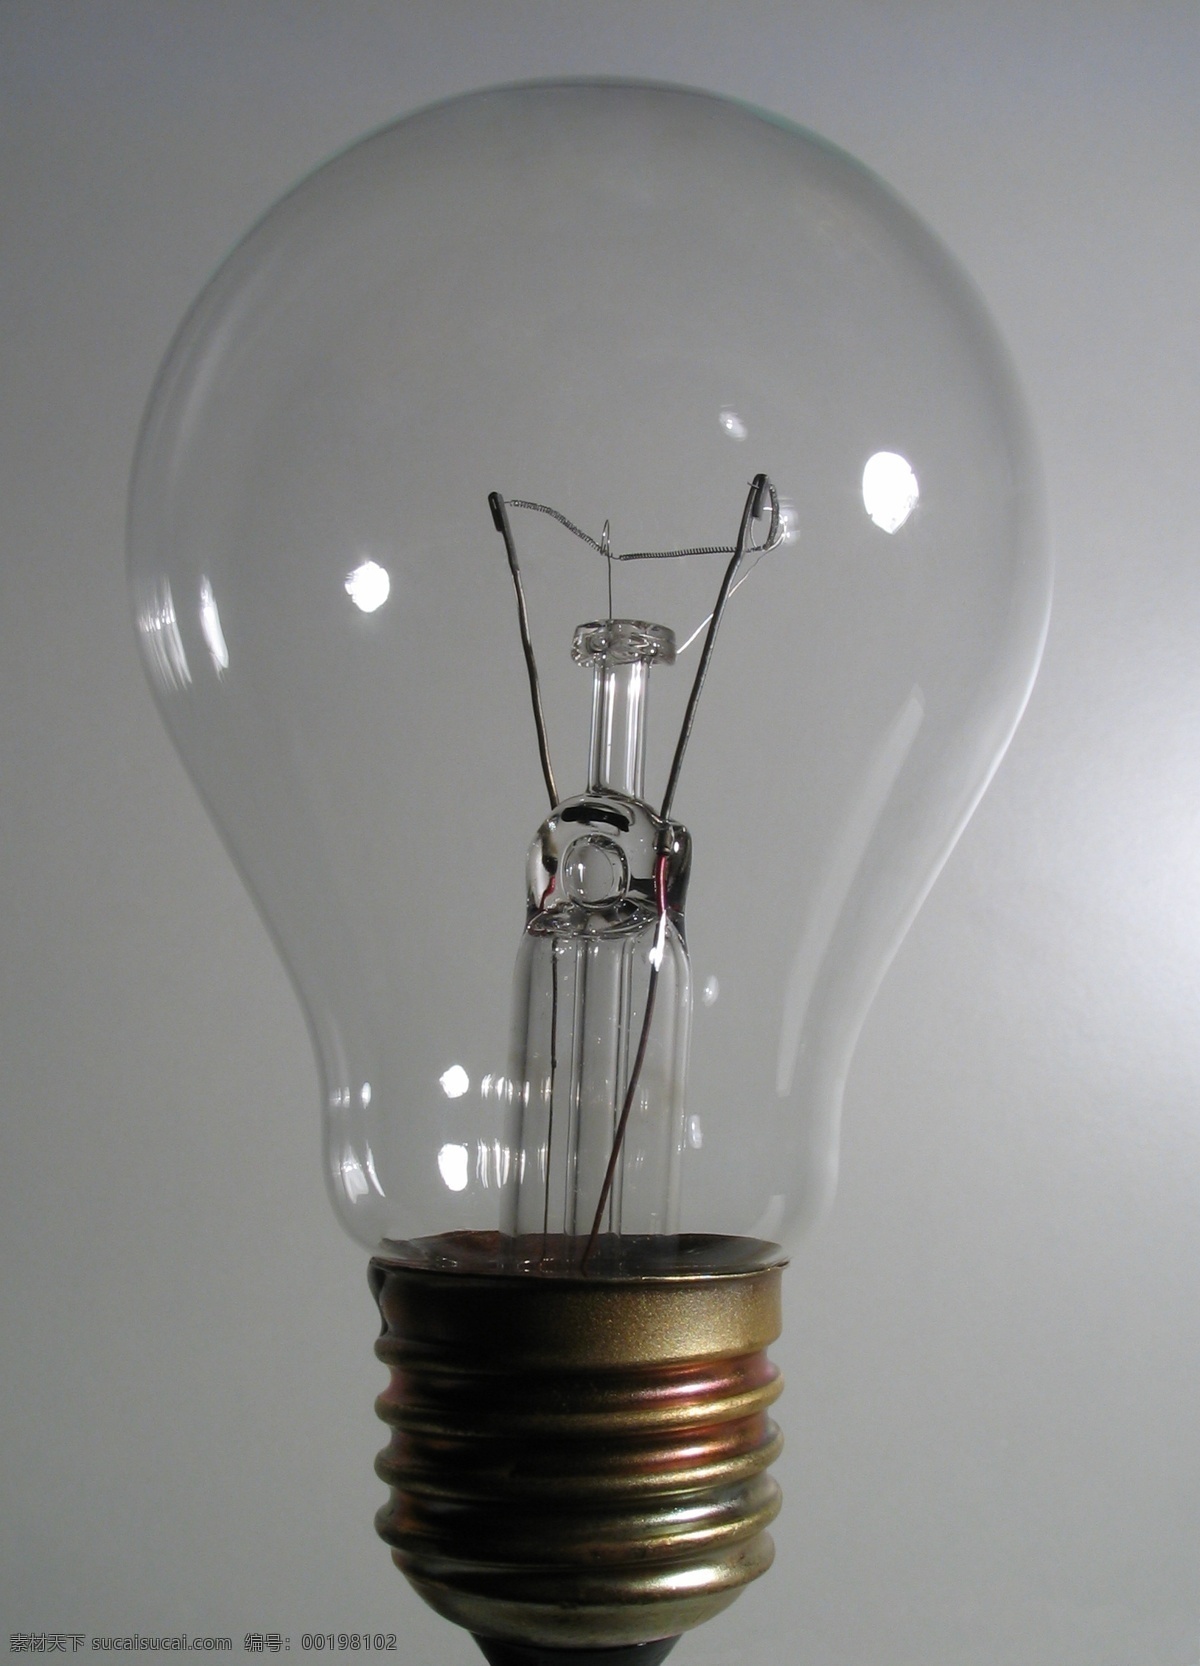 电灯泡素材图 能源概念 电灯泡 灯泡 绿色能源 环保能源 生态能源 洁净能源 可再生资源 能源环保 生活用品 生活百科 灰色